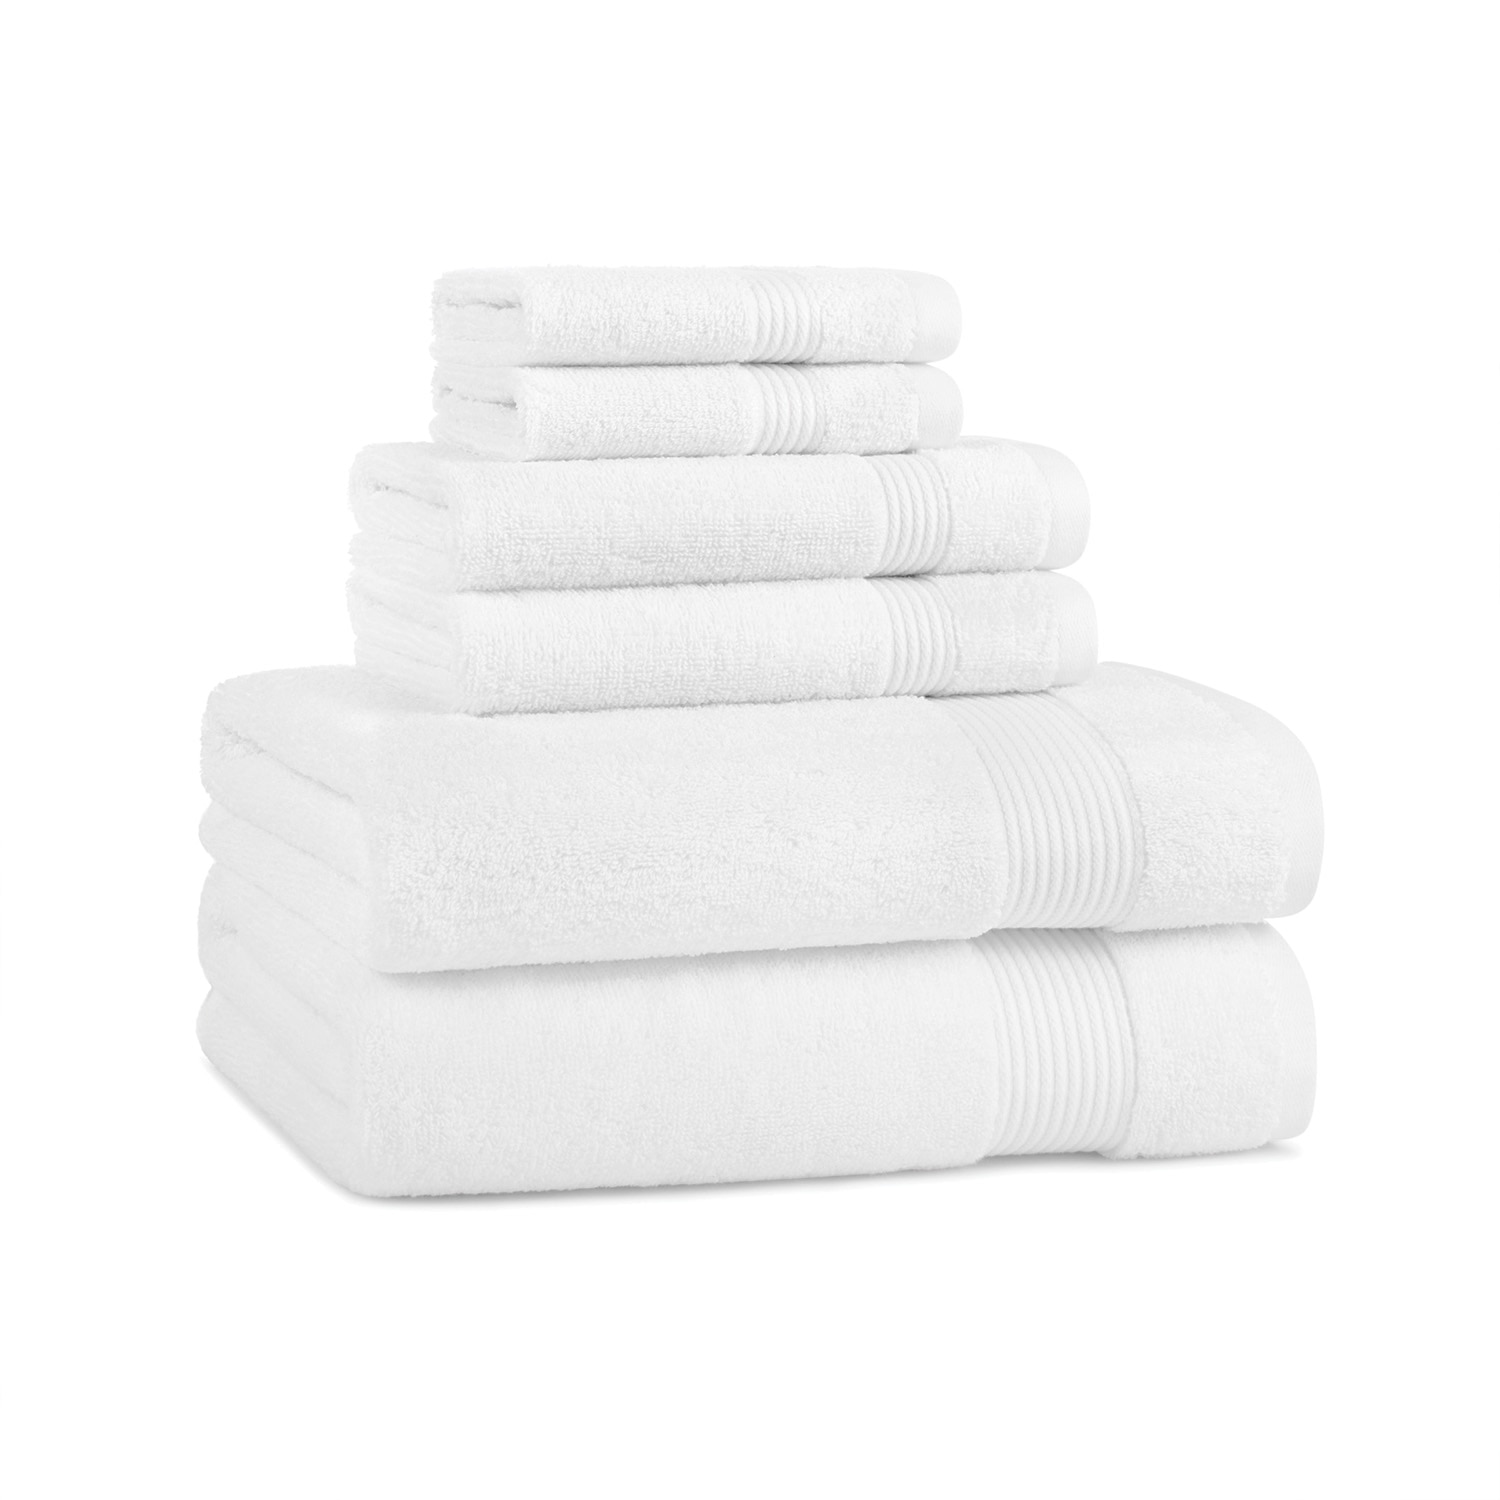 Host & Home 6 Piece Towel Set